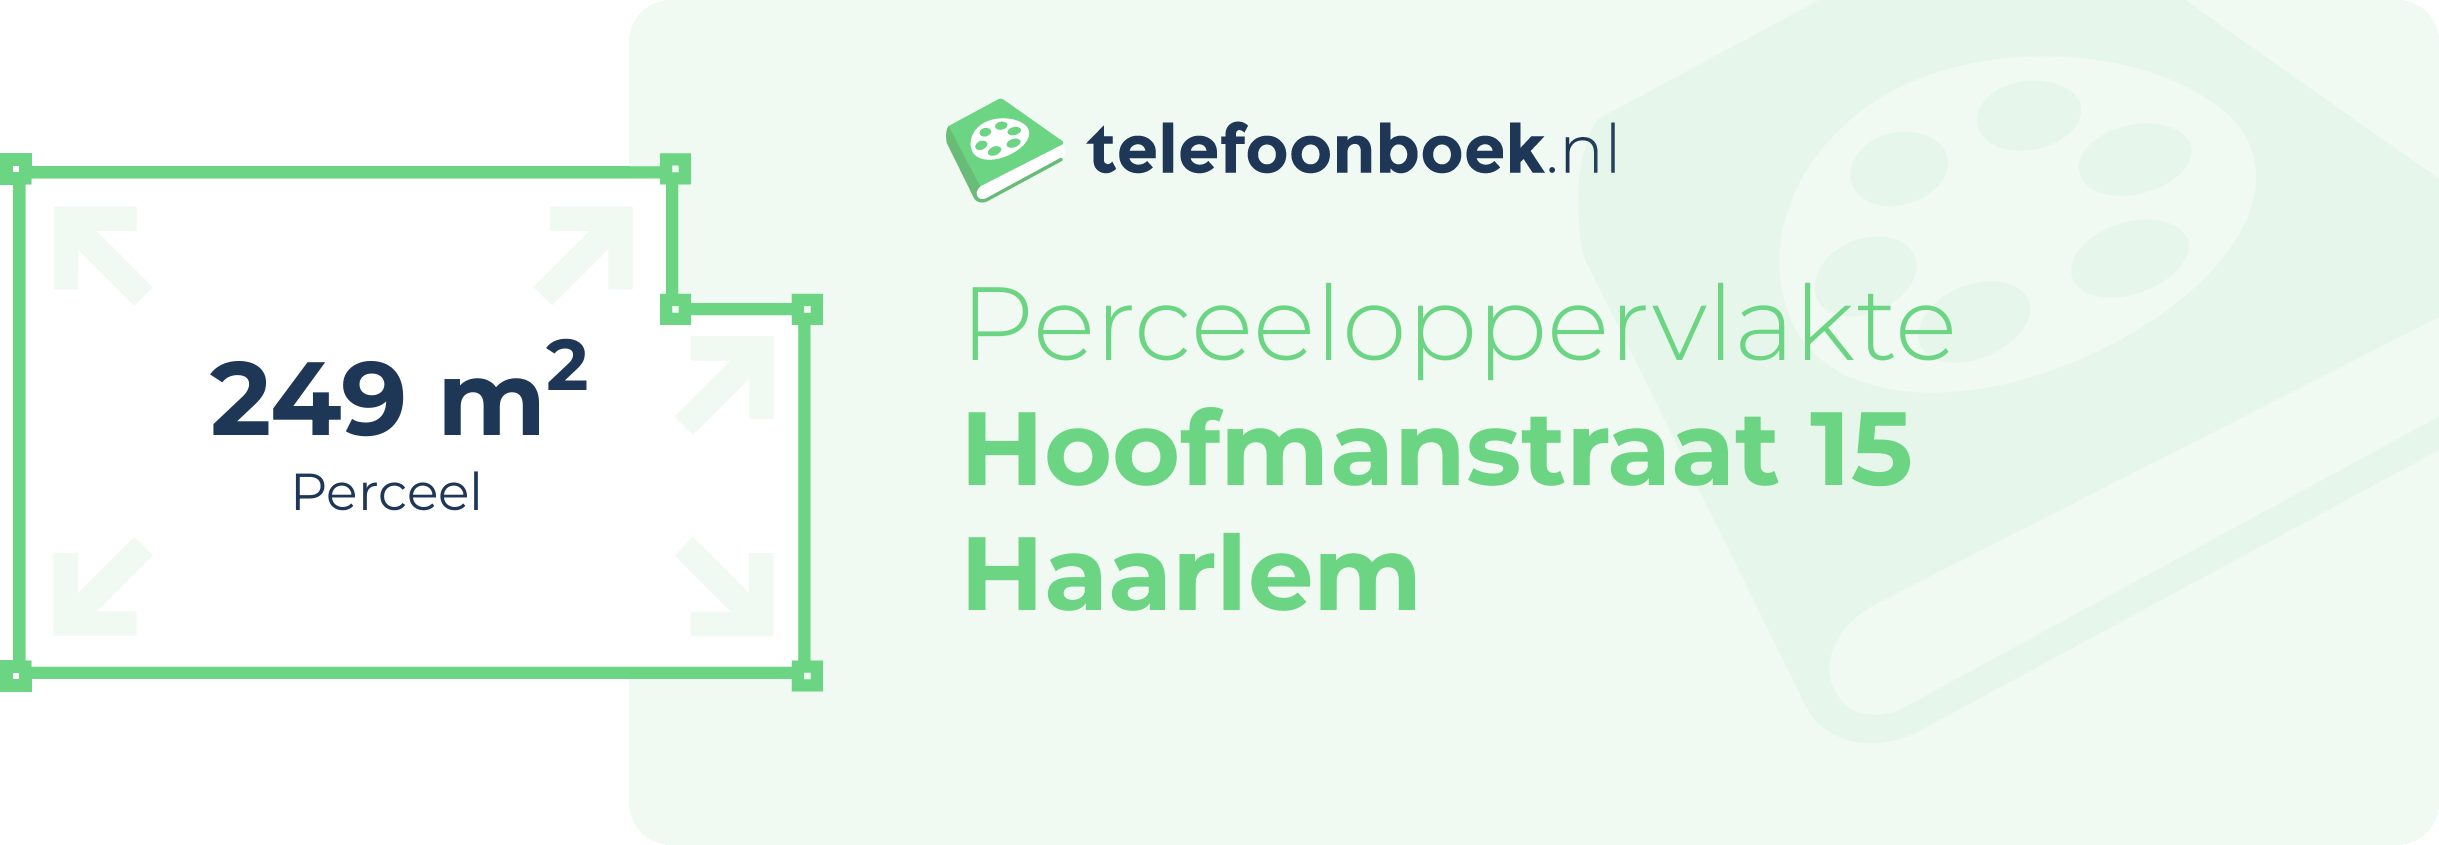 Perceeloppervlakte Hoofmanstraat 15 Haarlem